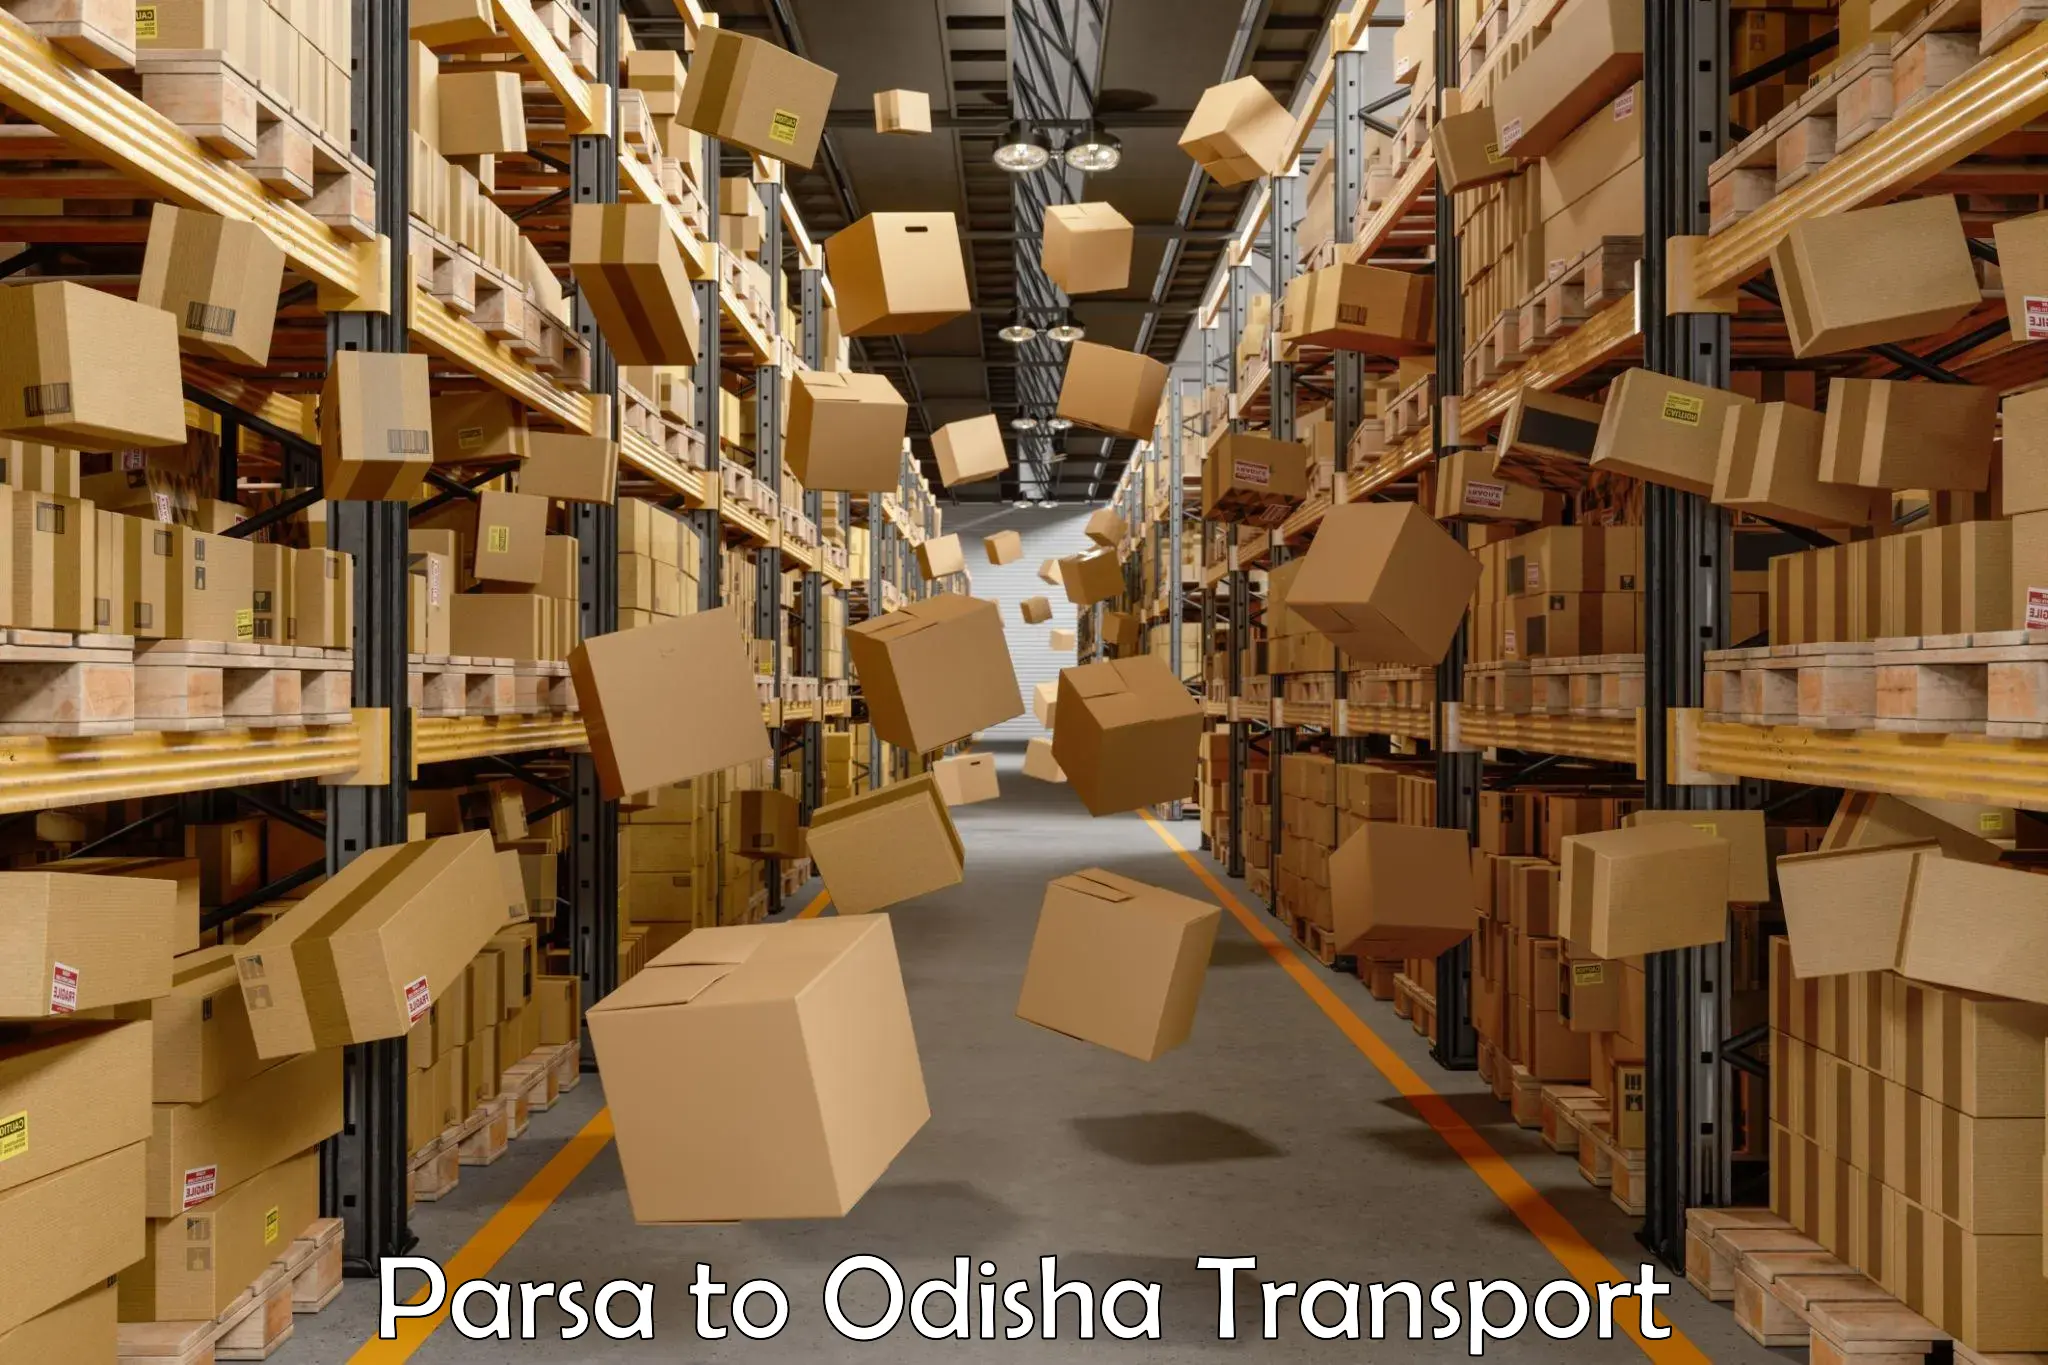 Vehicle parcel service Parsa to Baleswar